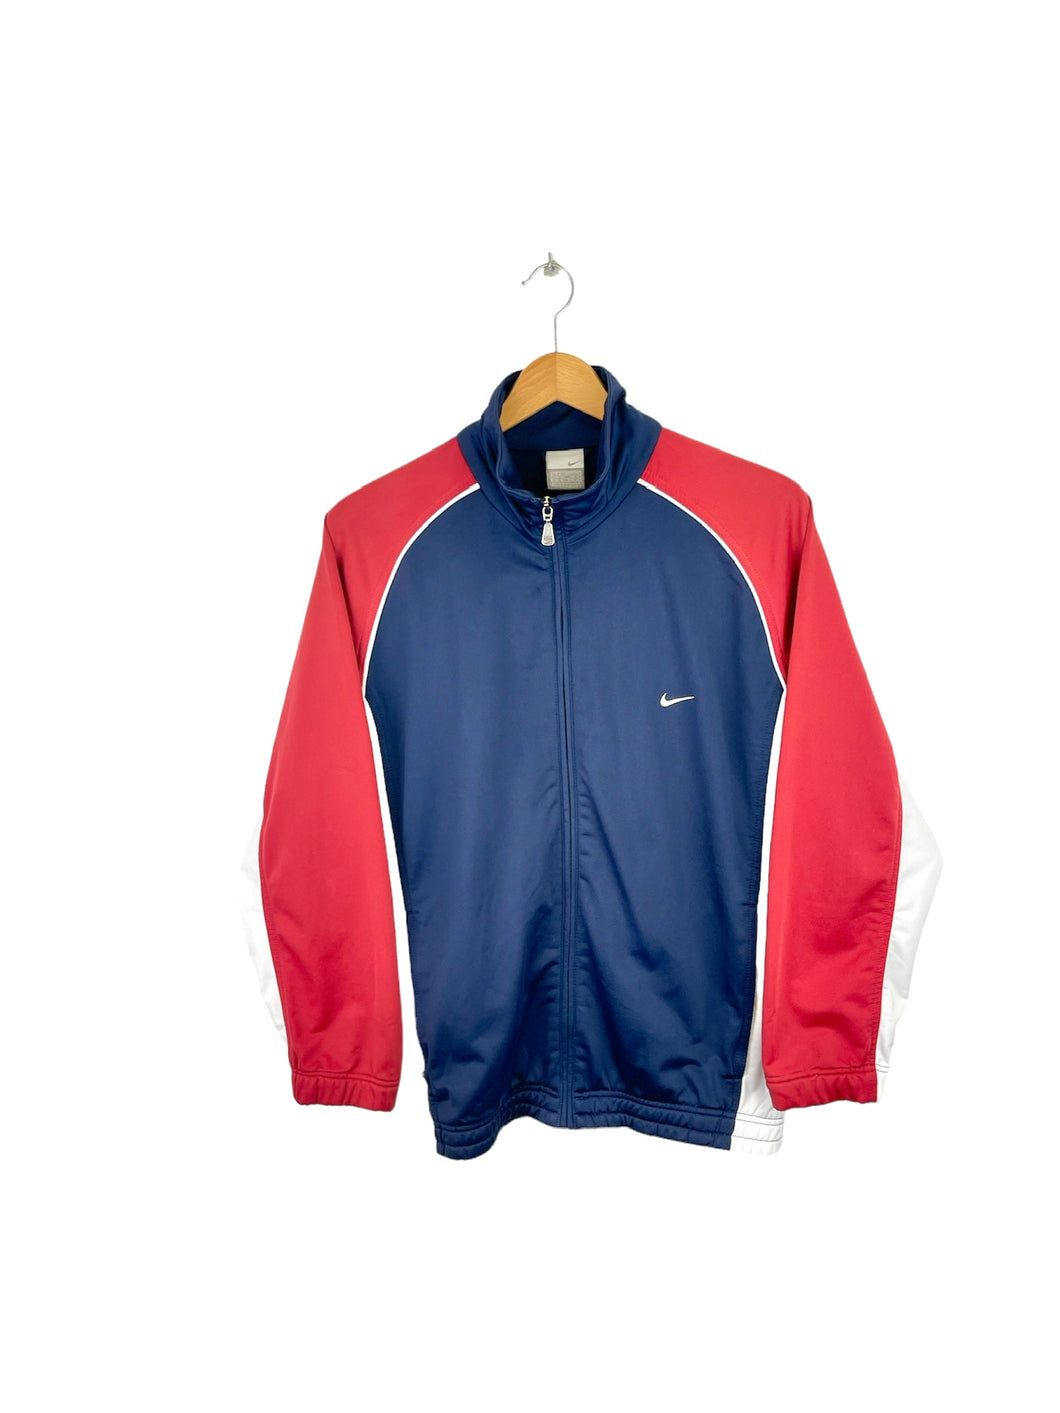 Nike Jacket - Large